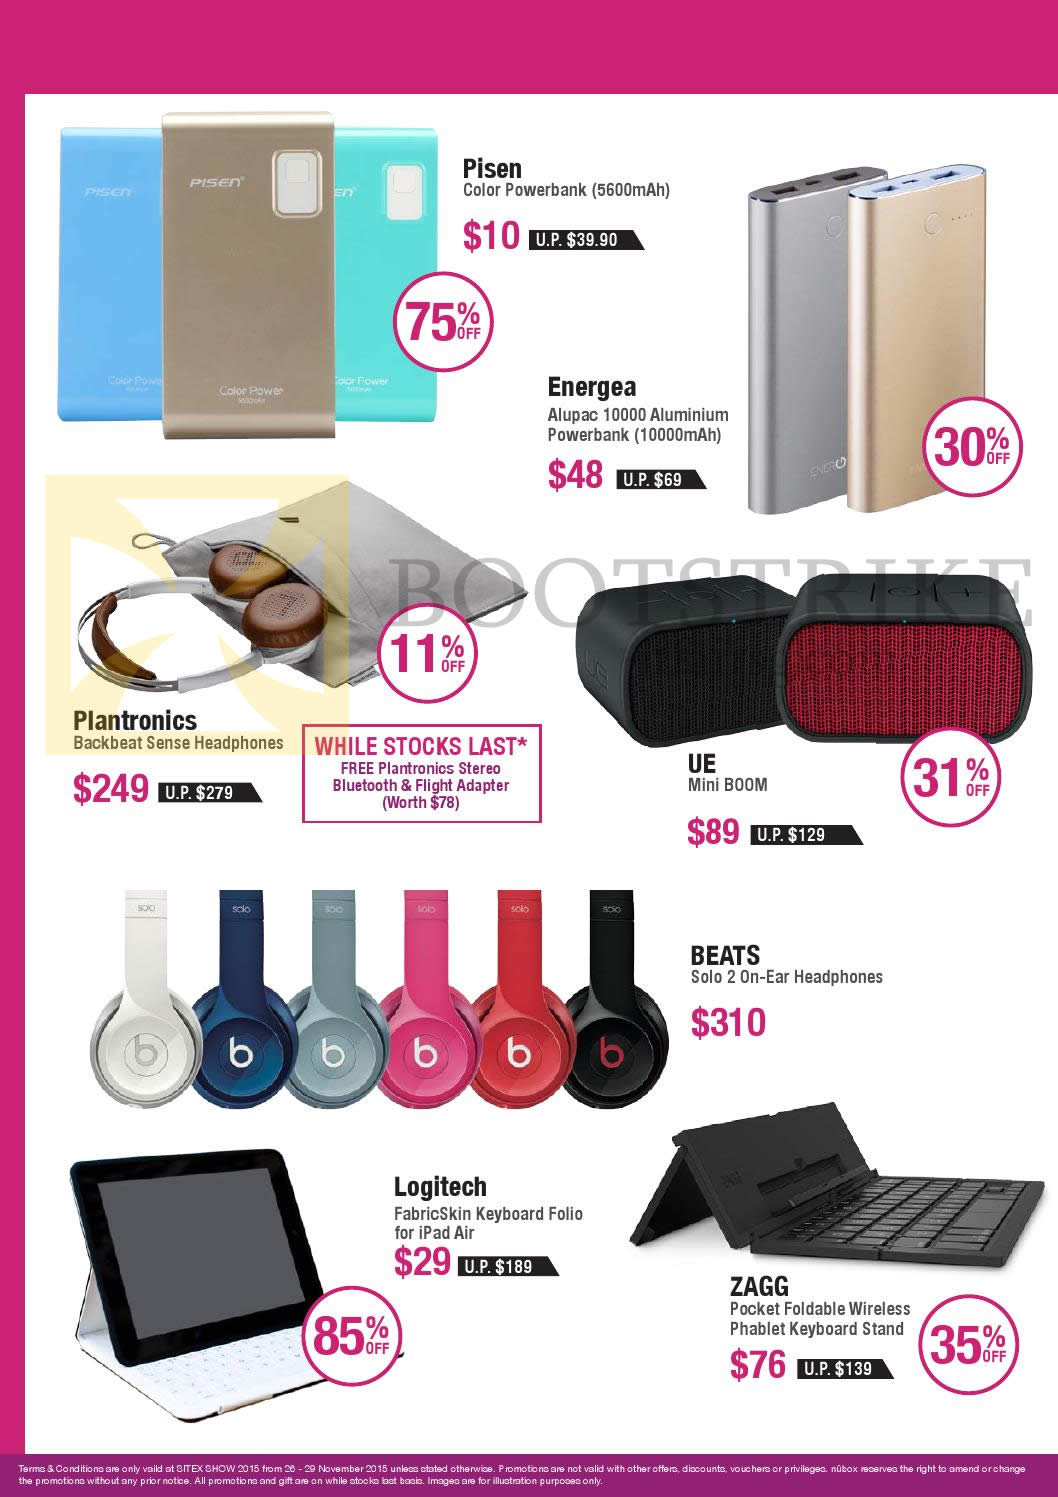 SITEX 2015 price list image brochure of Nubox Powerbanks, Speaker, Headphones, Folio Keyboard, Wireless Phablet Keyboard Stand